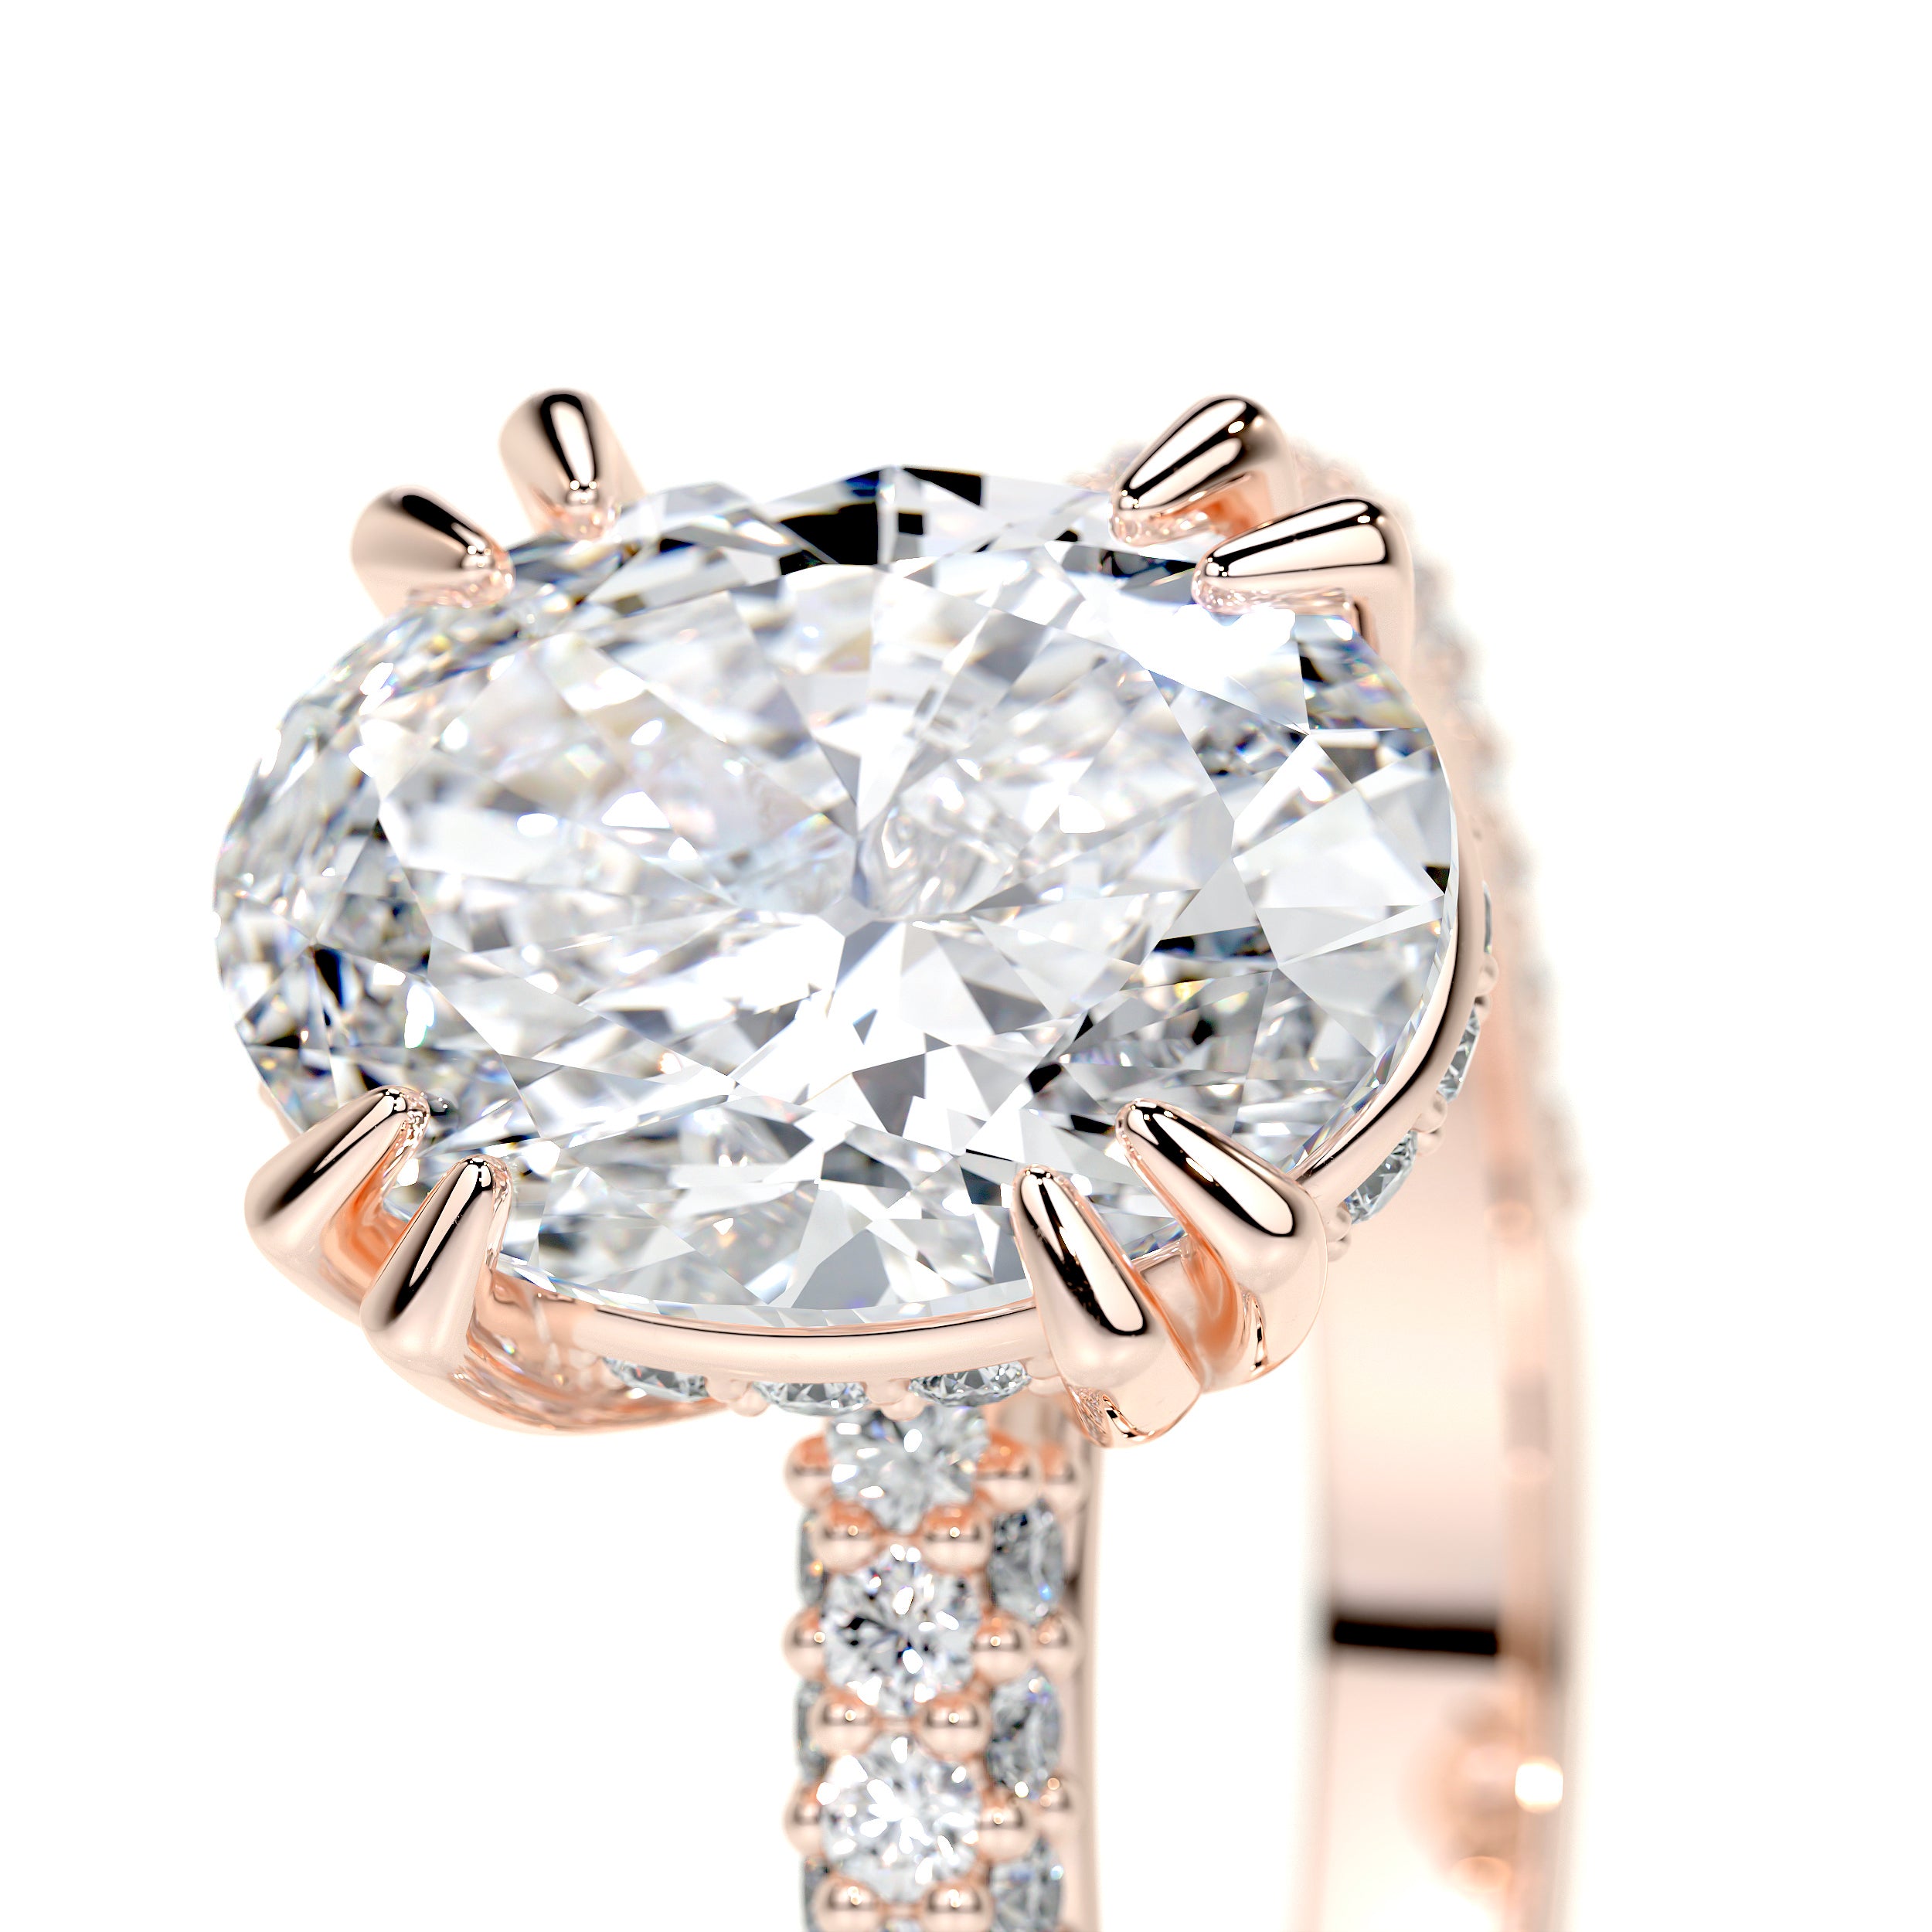 Kelly Lab Grown Diamond Ring -14K Rose Gold